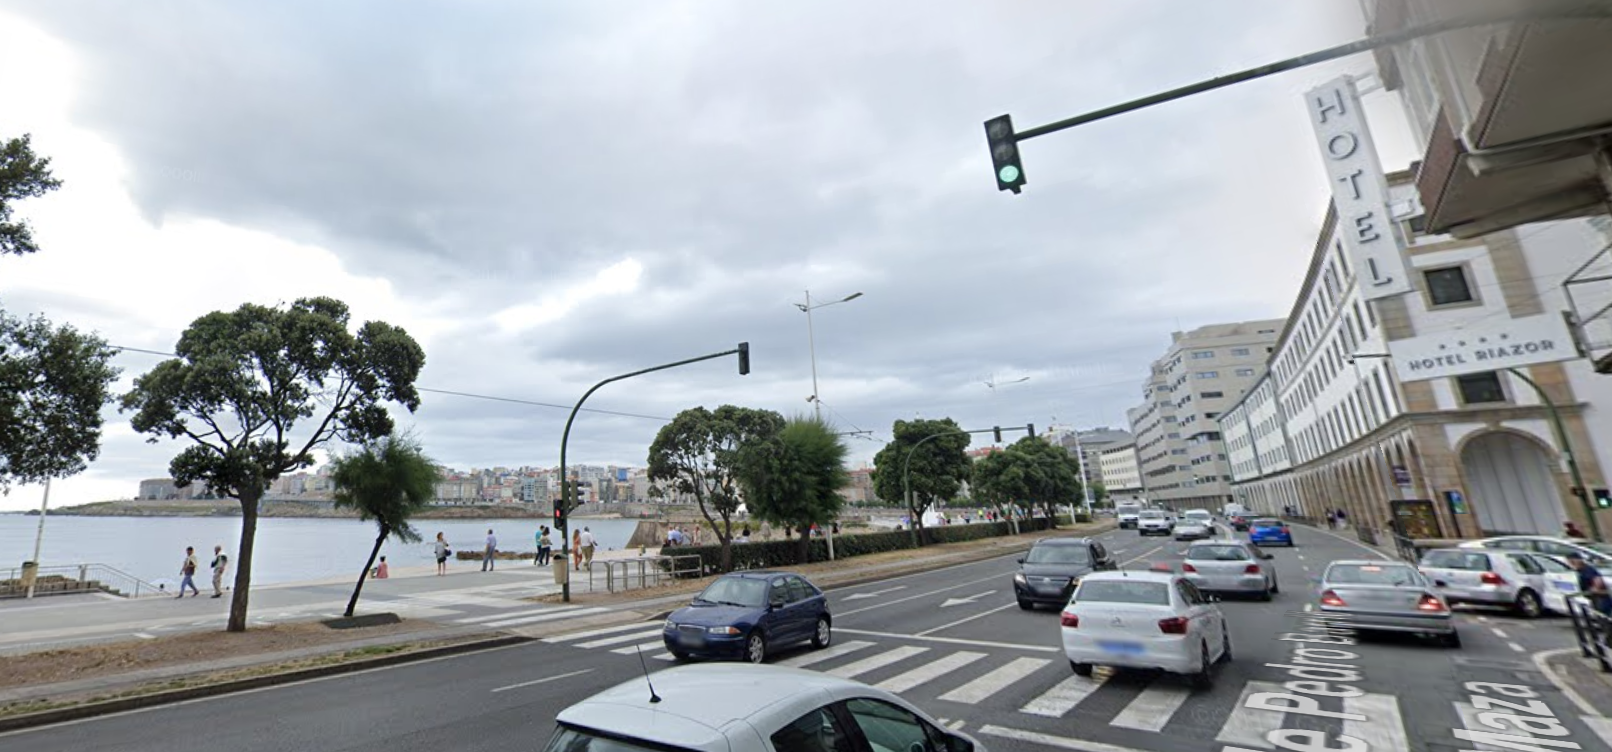 El hotel Riazor de A Coruña, cerca de donde se produjo el presunto asesinato homófobo que acabó con la vida del joven, en una imagen de Google Maps.